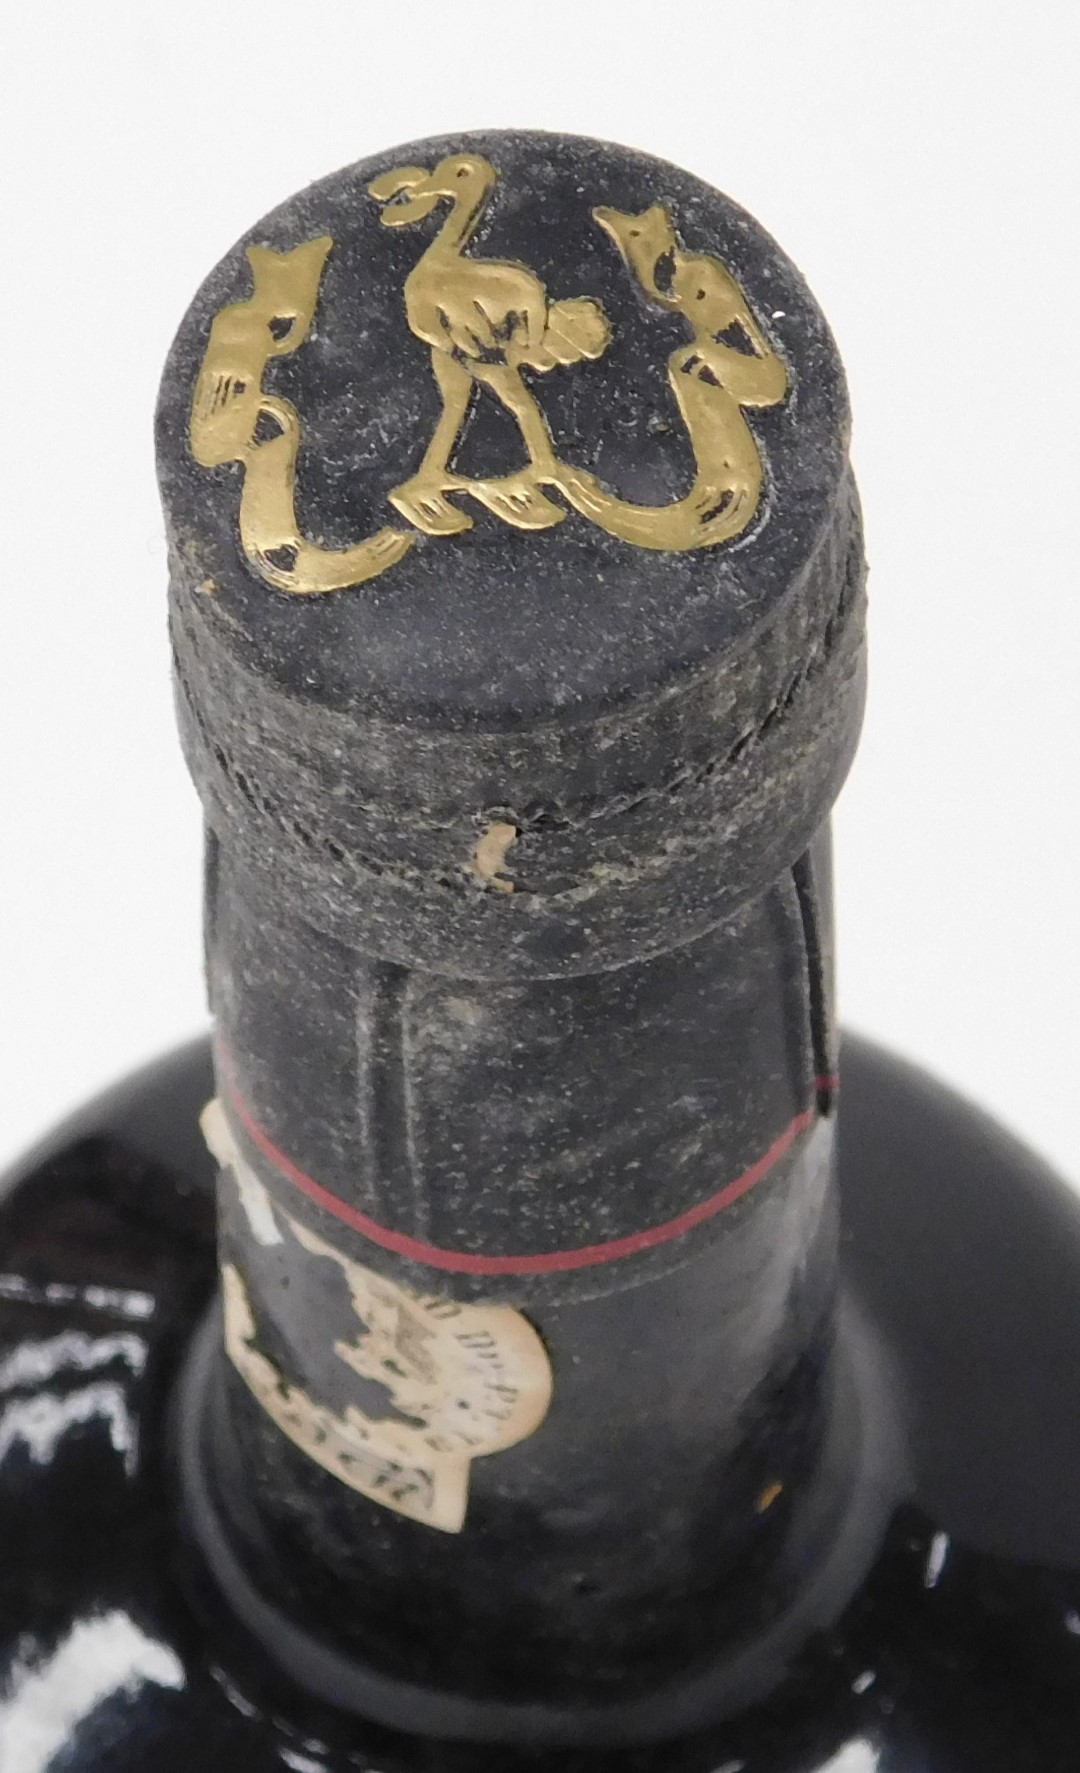 A bottle of Ferreira late bottled vintage port 1980, cased. - Image 4 of 4